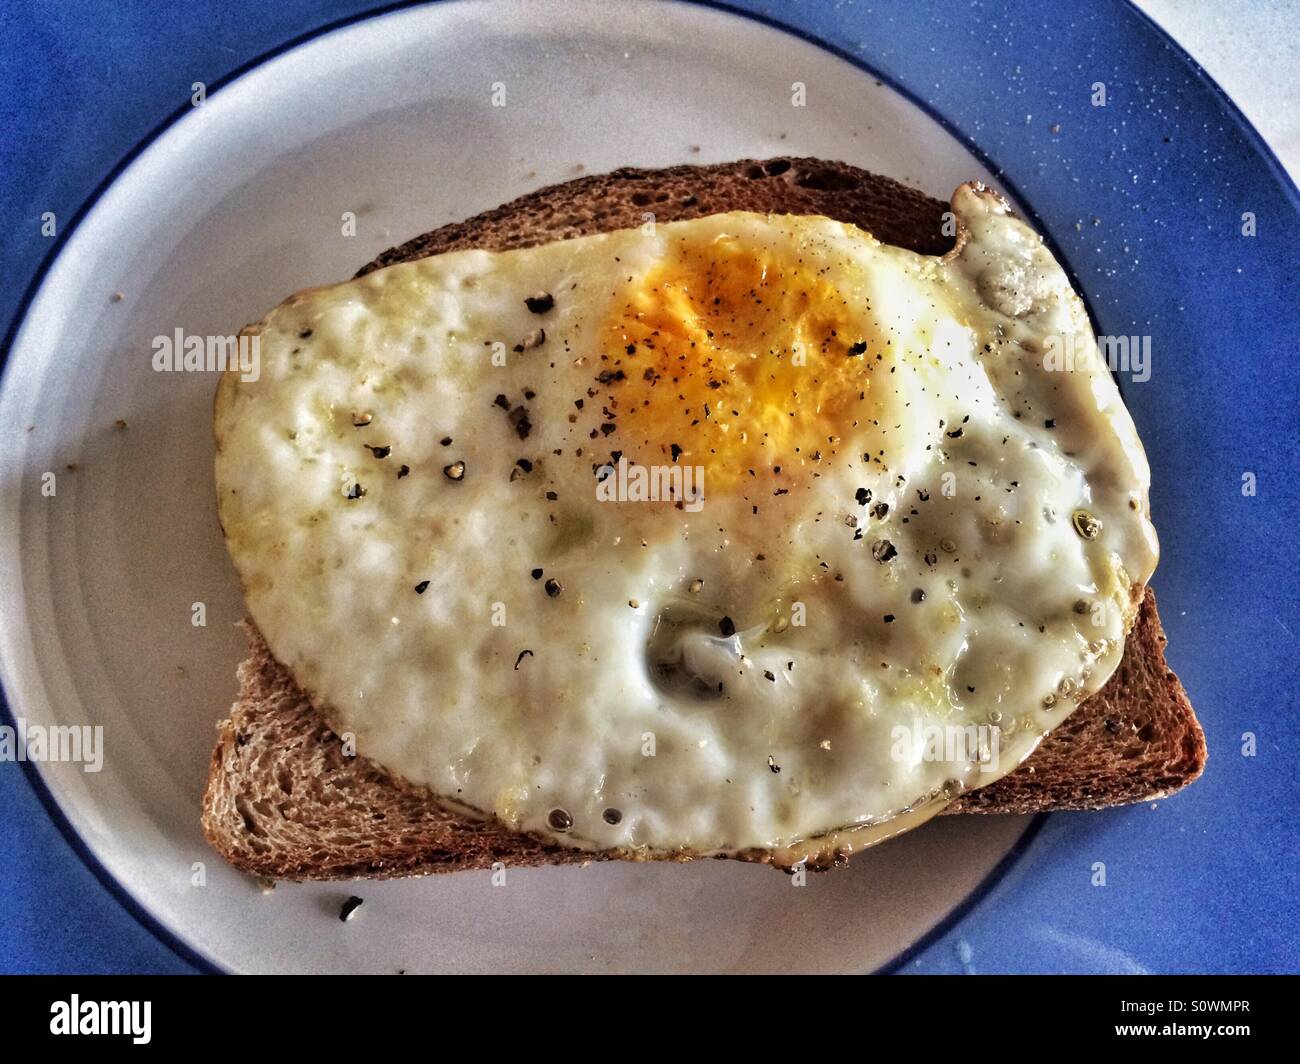 Gebratenes Ei auf Toast mit grob gemahlener schwarzer Pfeffer, präsentiert auf einem blau-weißen Teller Stockfoto